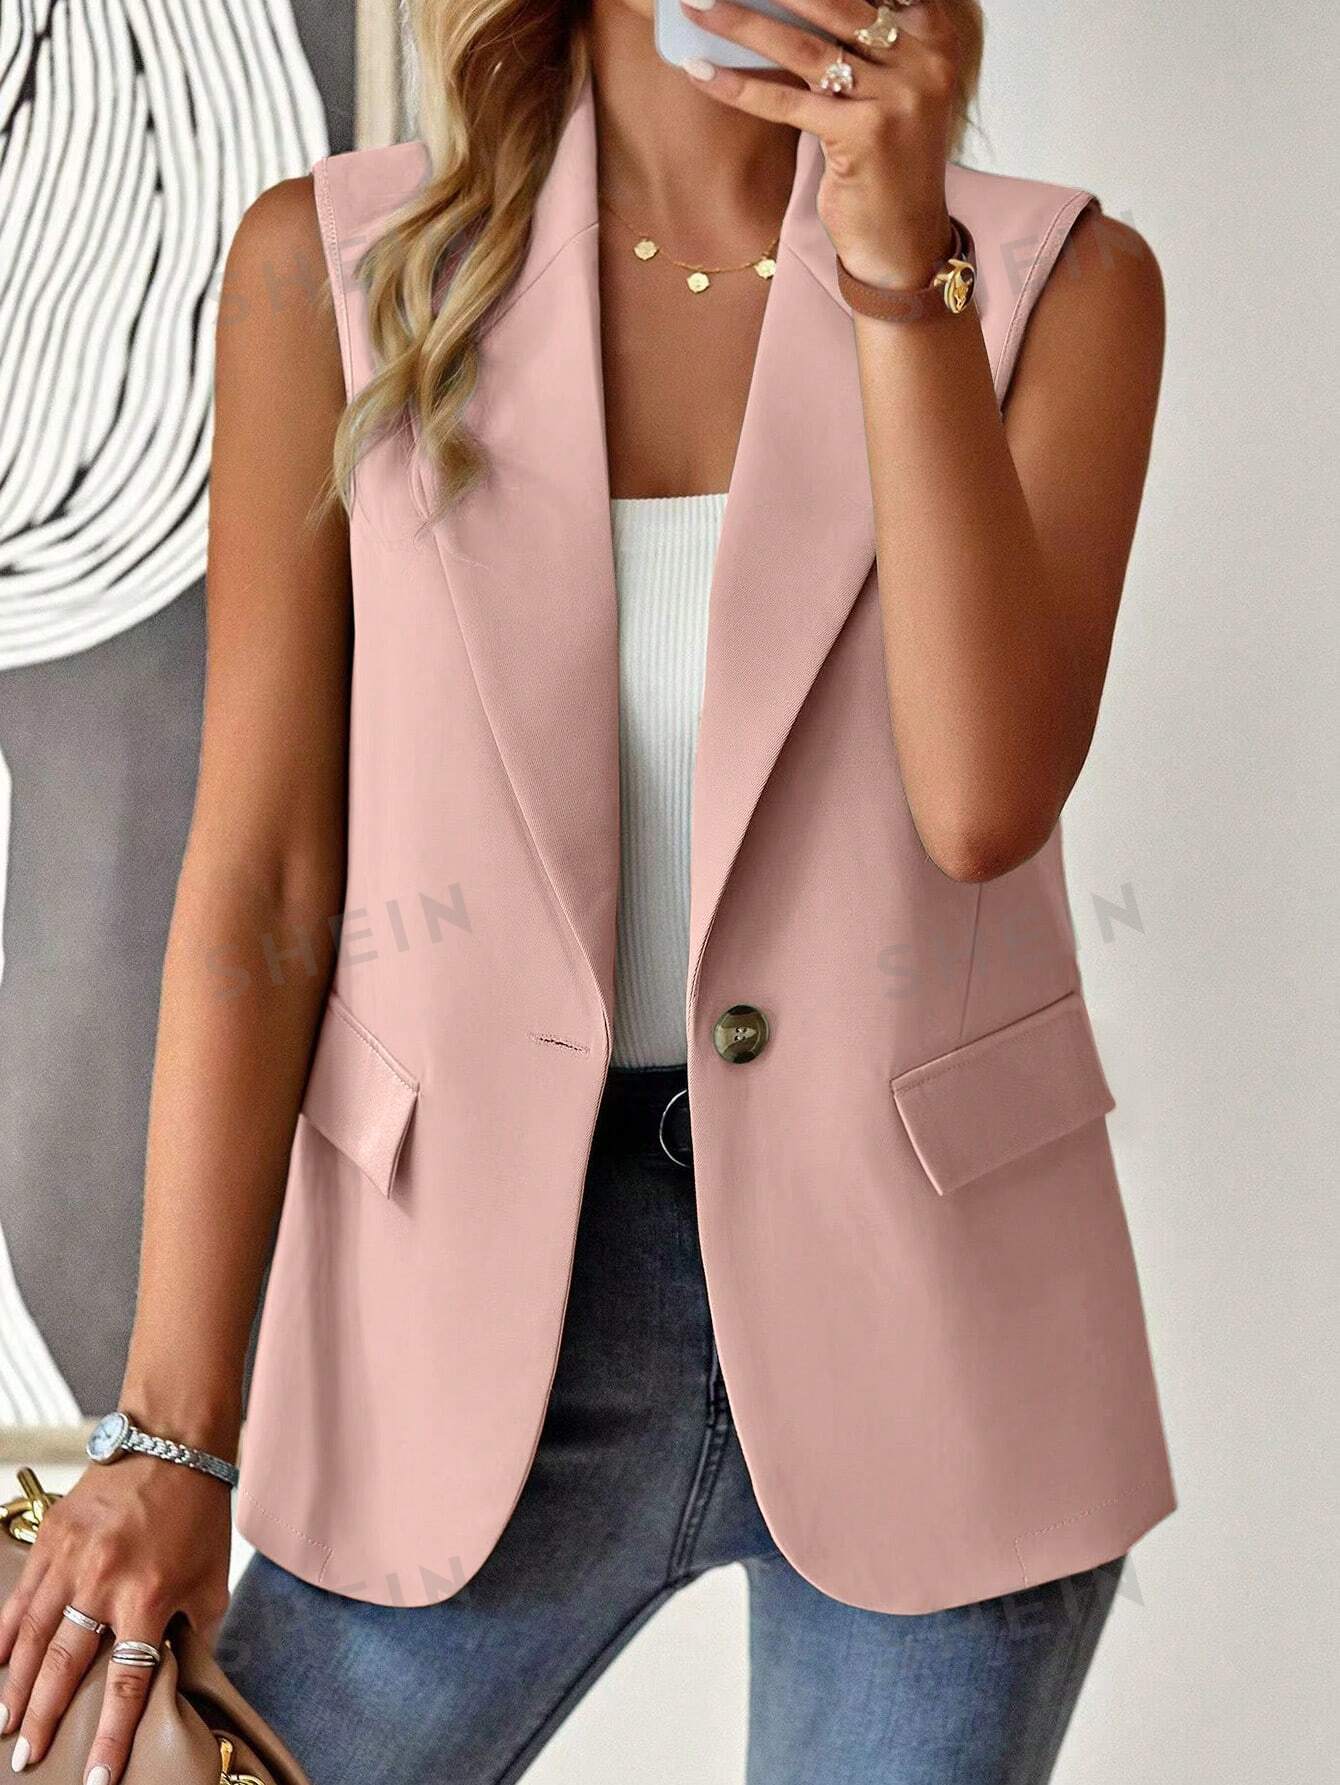 SHEIN Frenchy женский однотонный пиджак в стиле жилета с зубчатыми лацканами, розовый fashion ladies